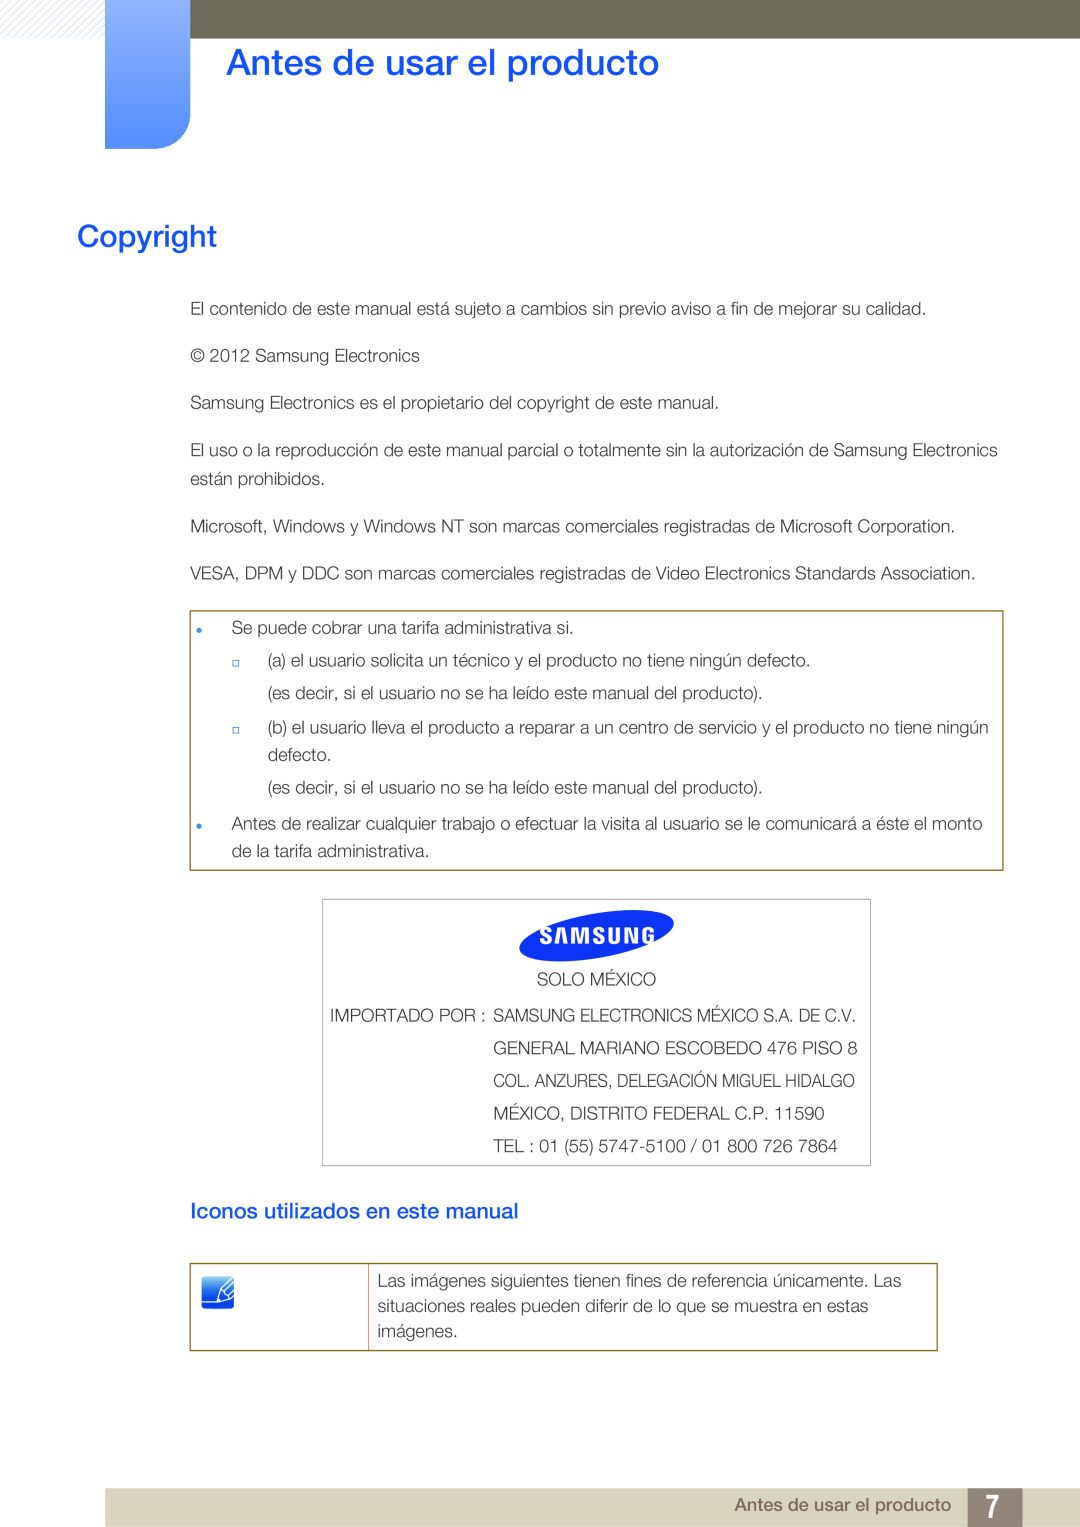 Samsung LS24C45KMS/EN, LS22C45KMSV/EN, LS22C45KMS/EN Antes de usar el producto, Copyright, Iconos utilizados en este manual 